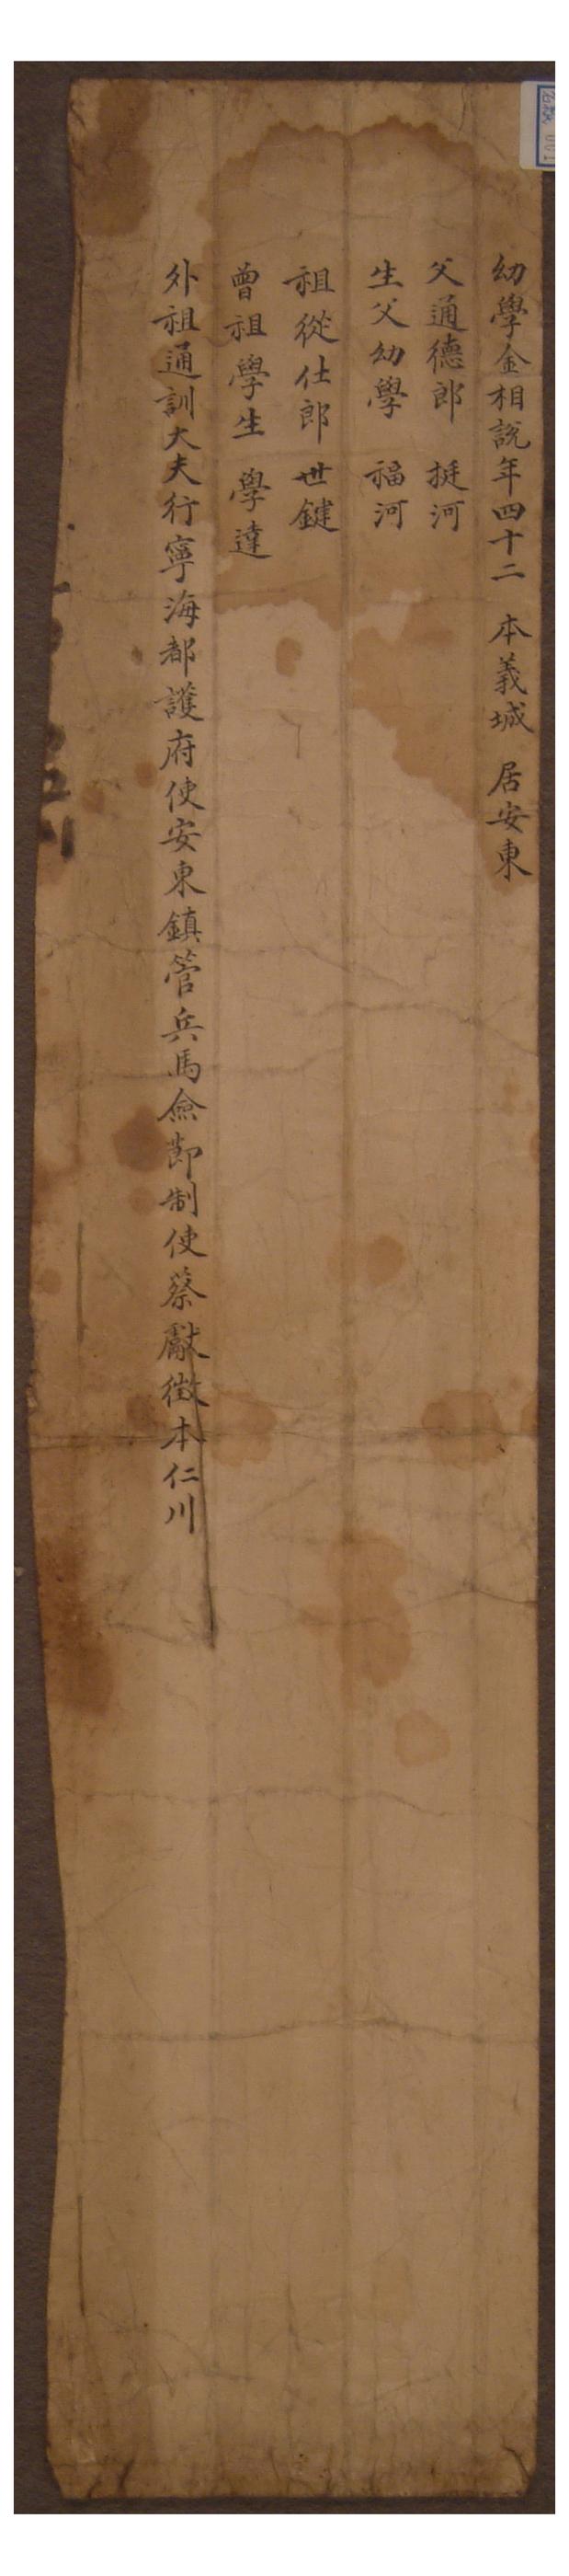 1761년에 김상열이 작성한 시권의 명지